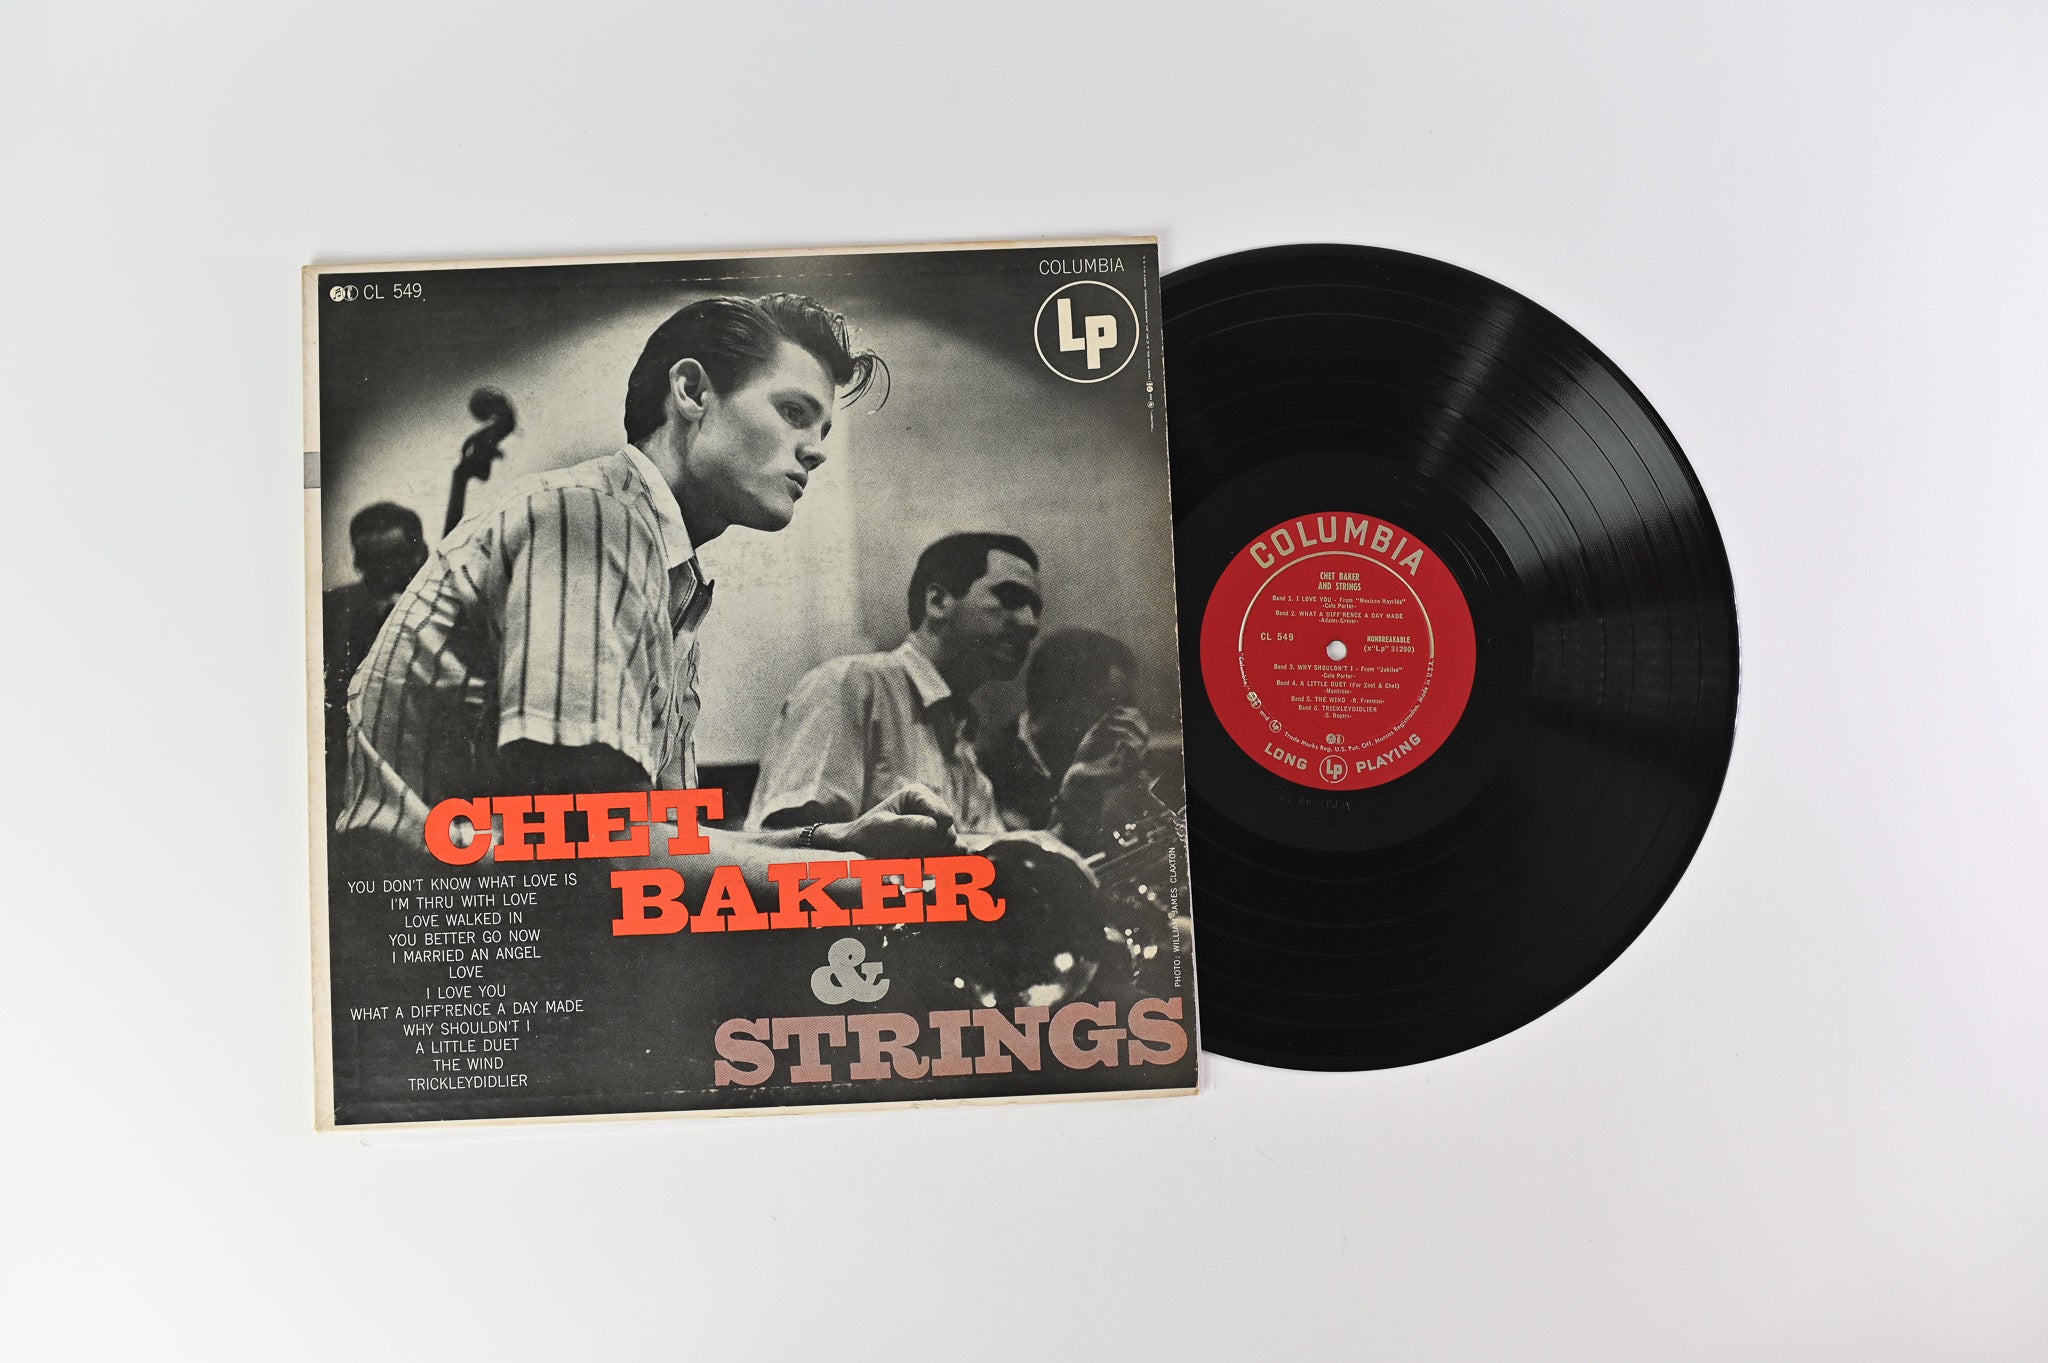 Chet Baker - Chet Baker & Strings on Columbia - Mono DG